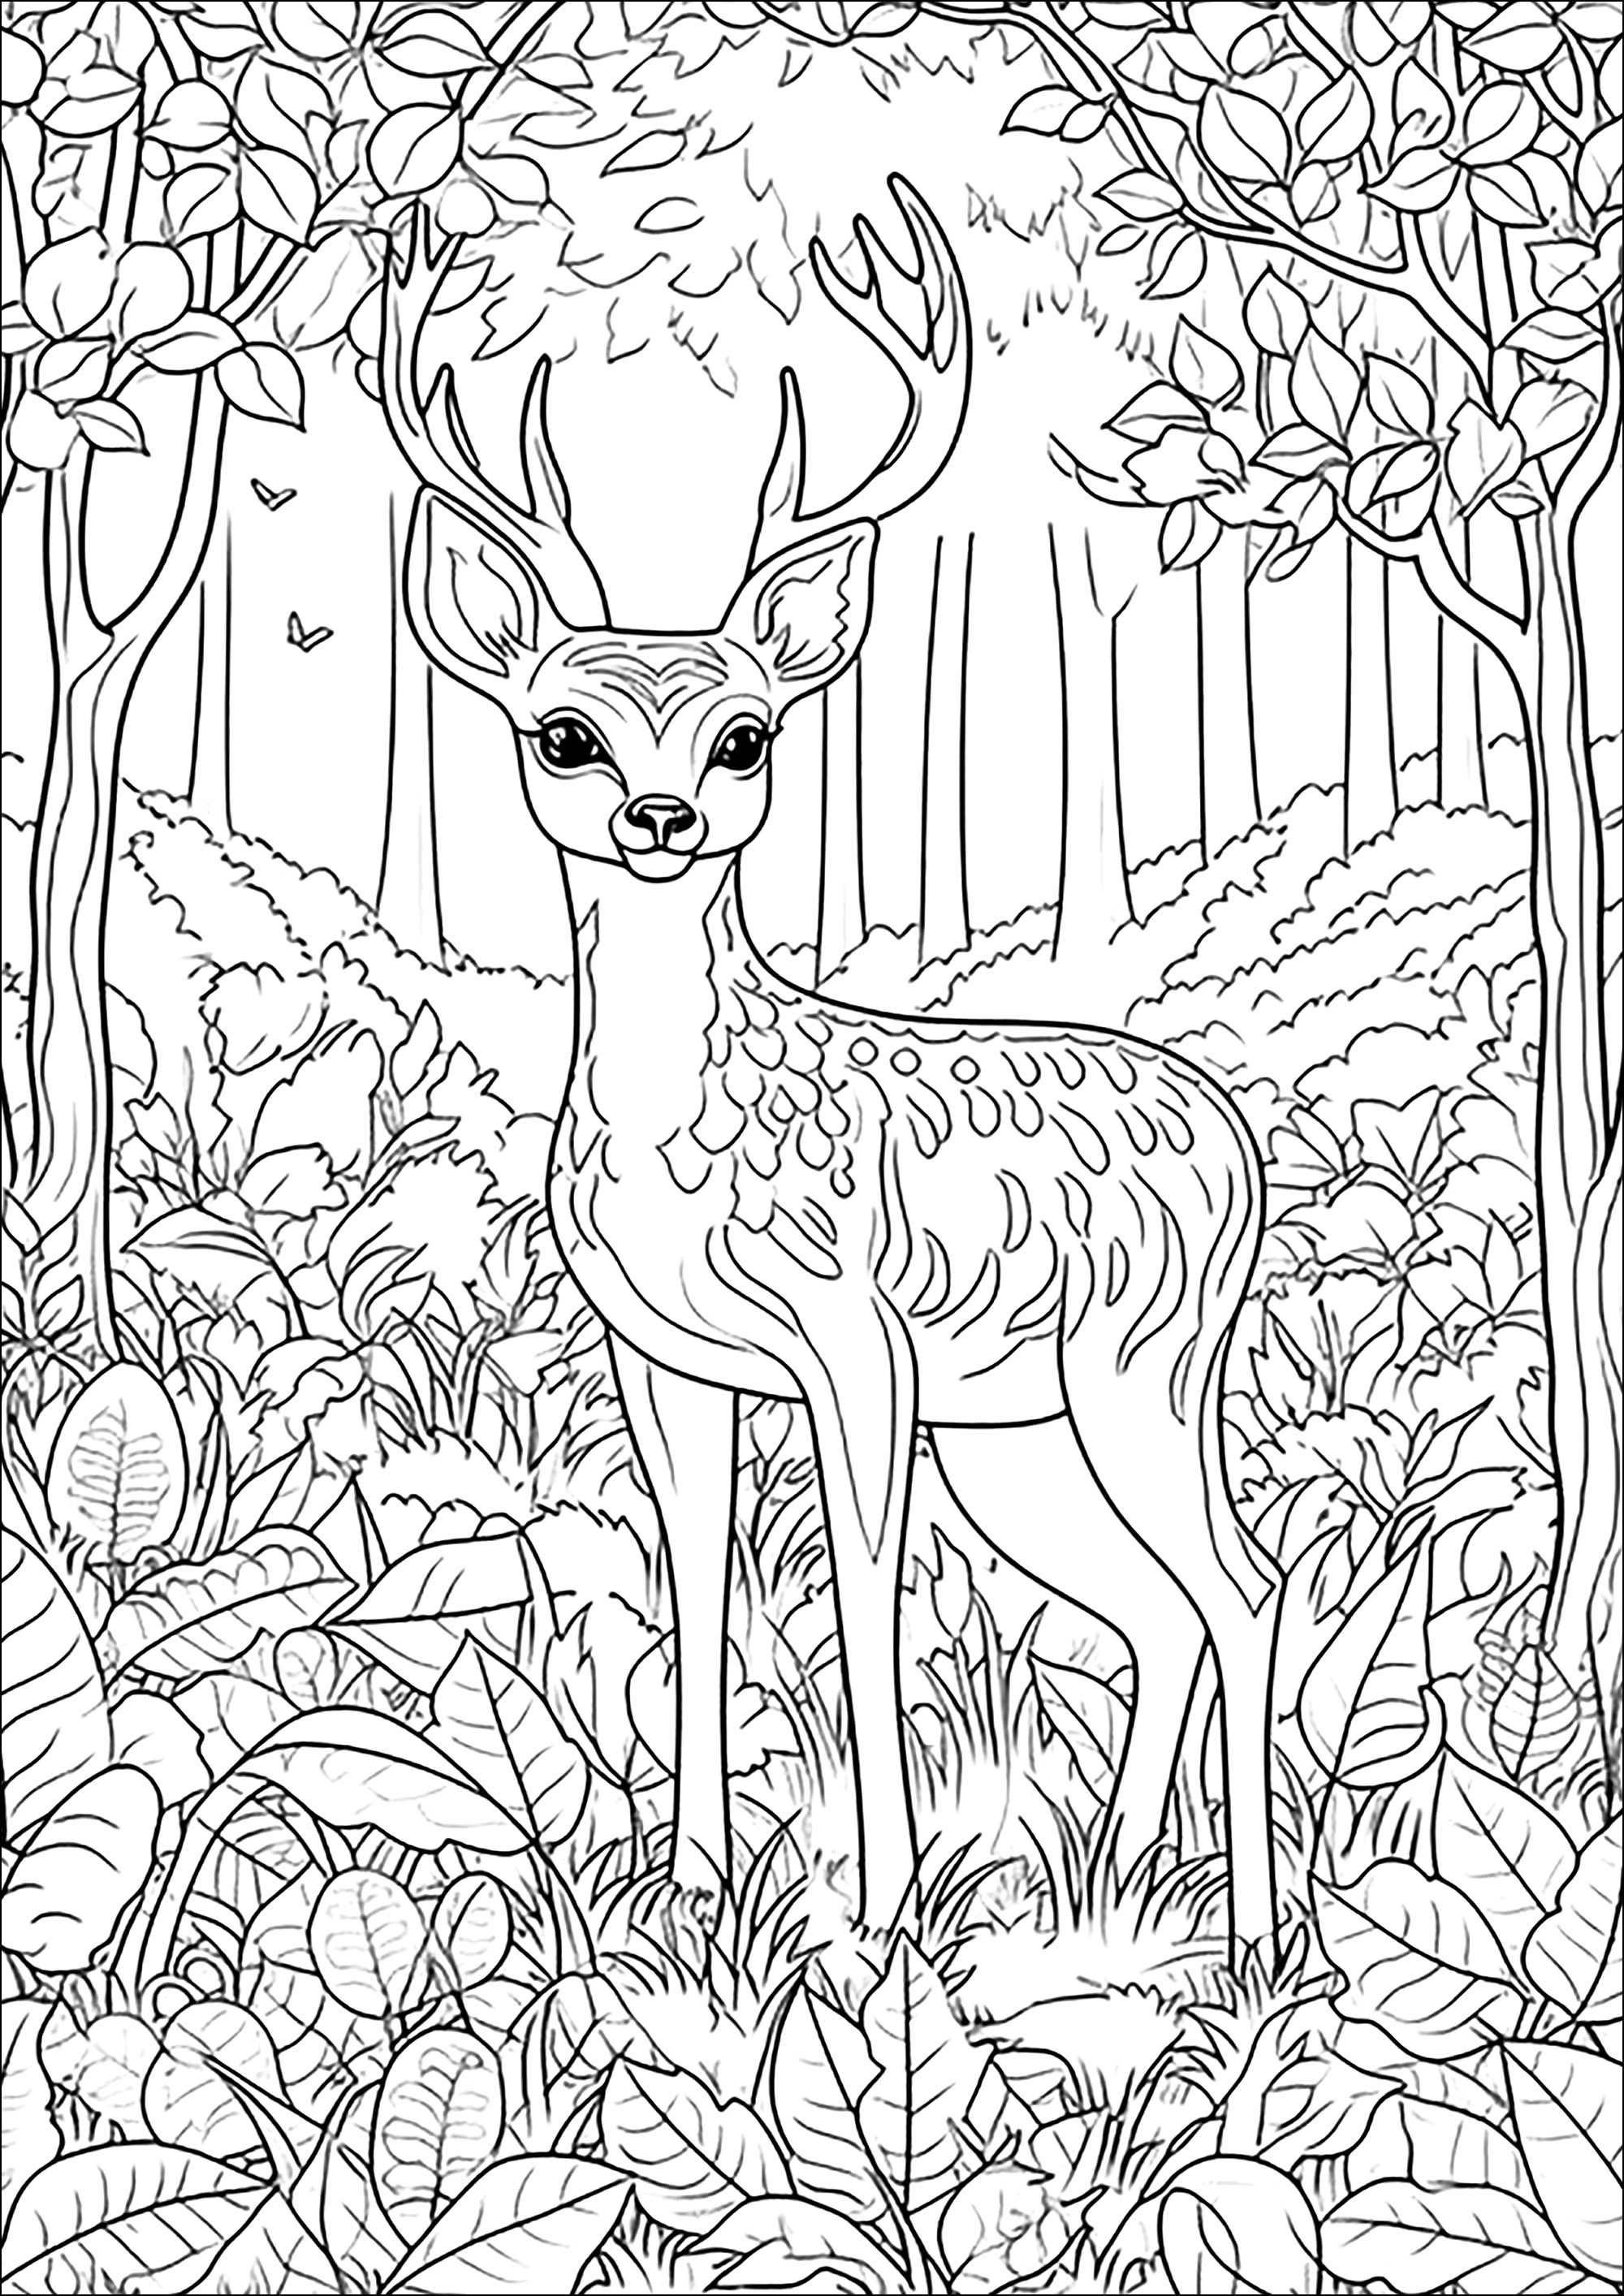 Un bel cervo nella foresta. Molti dettagli da colorare